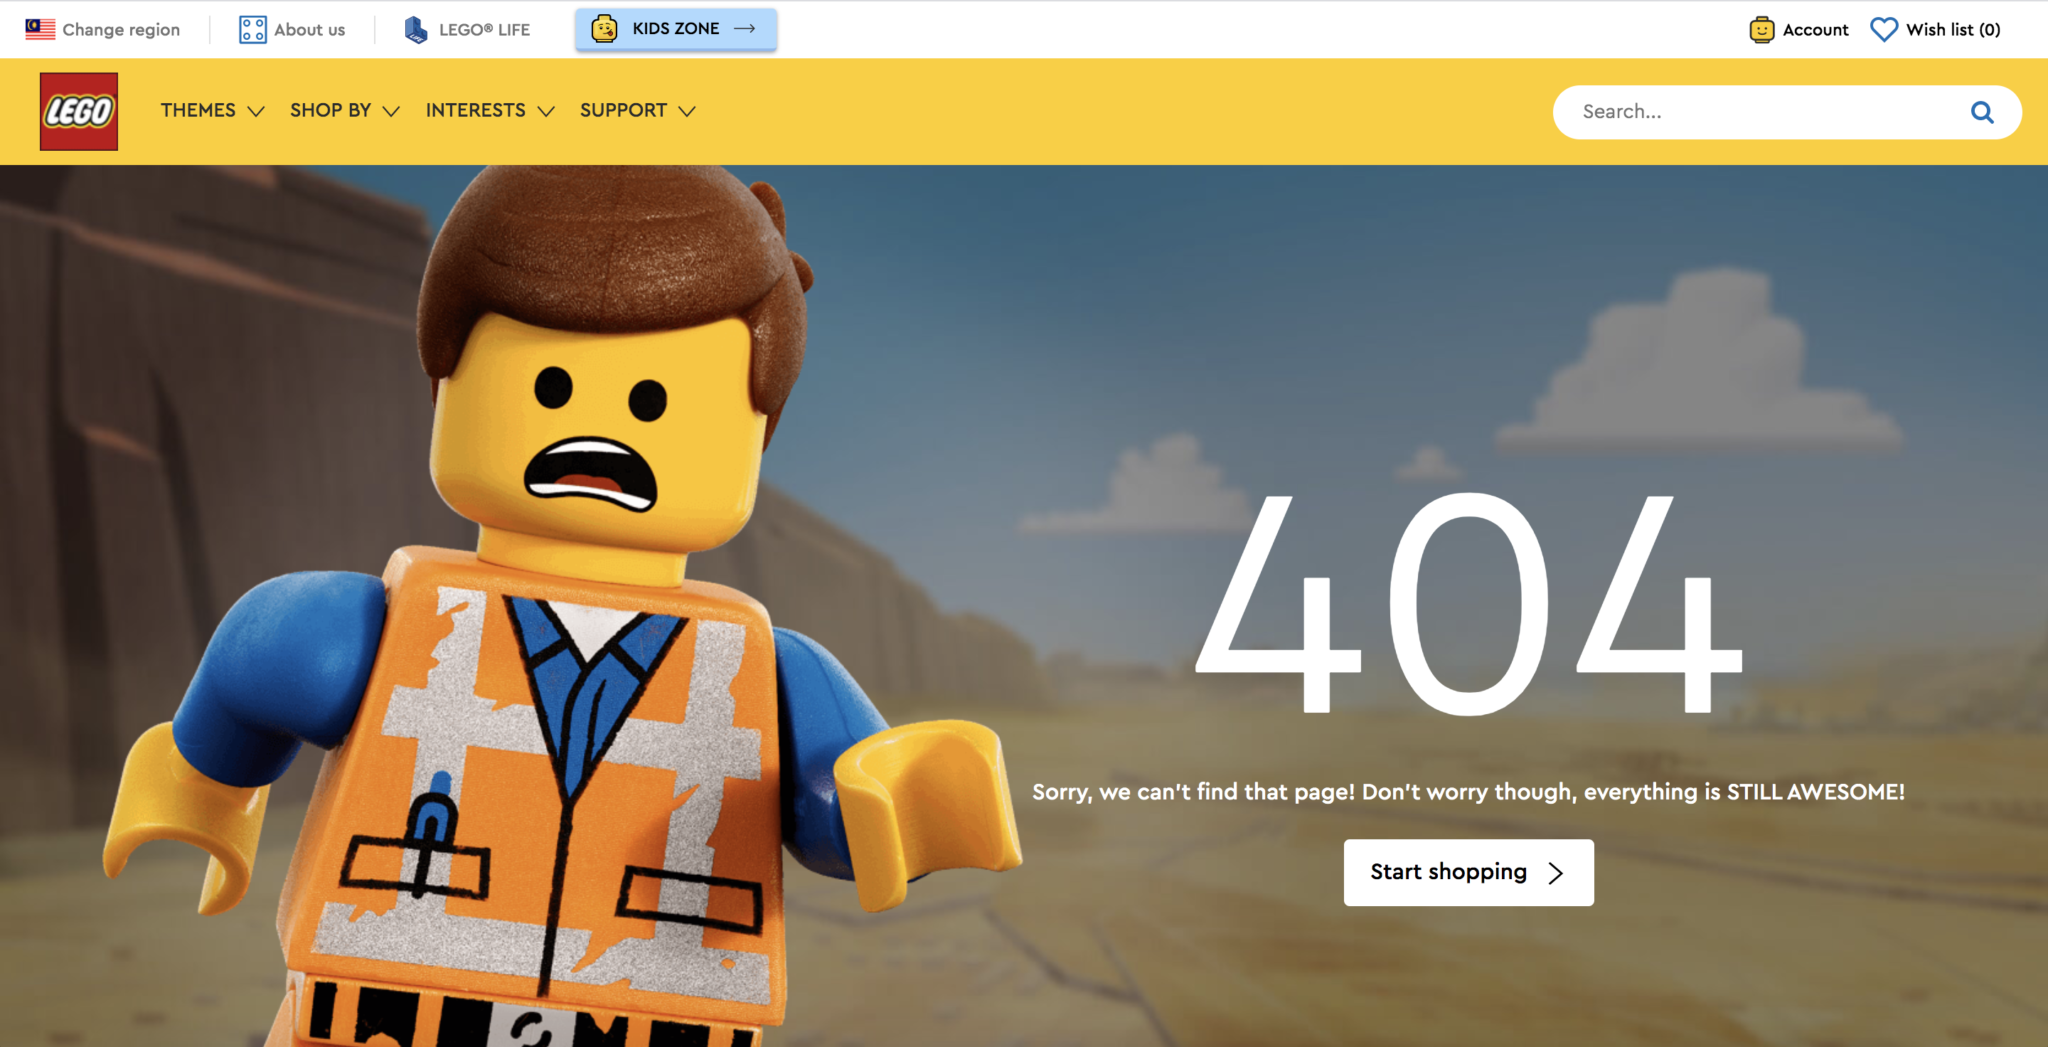 Identify error 404s or broken links